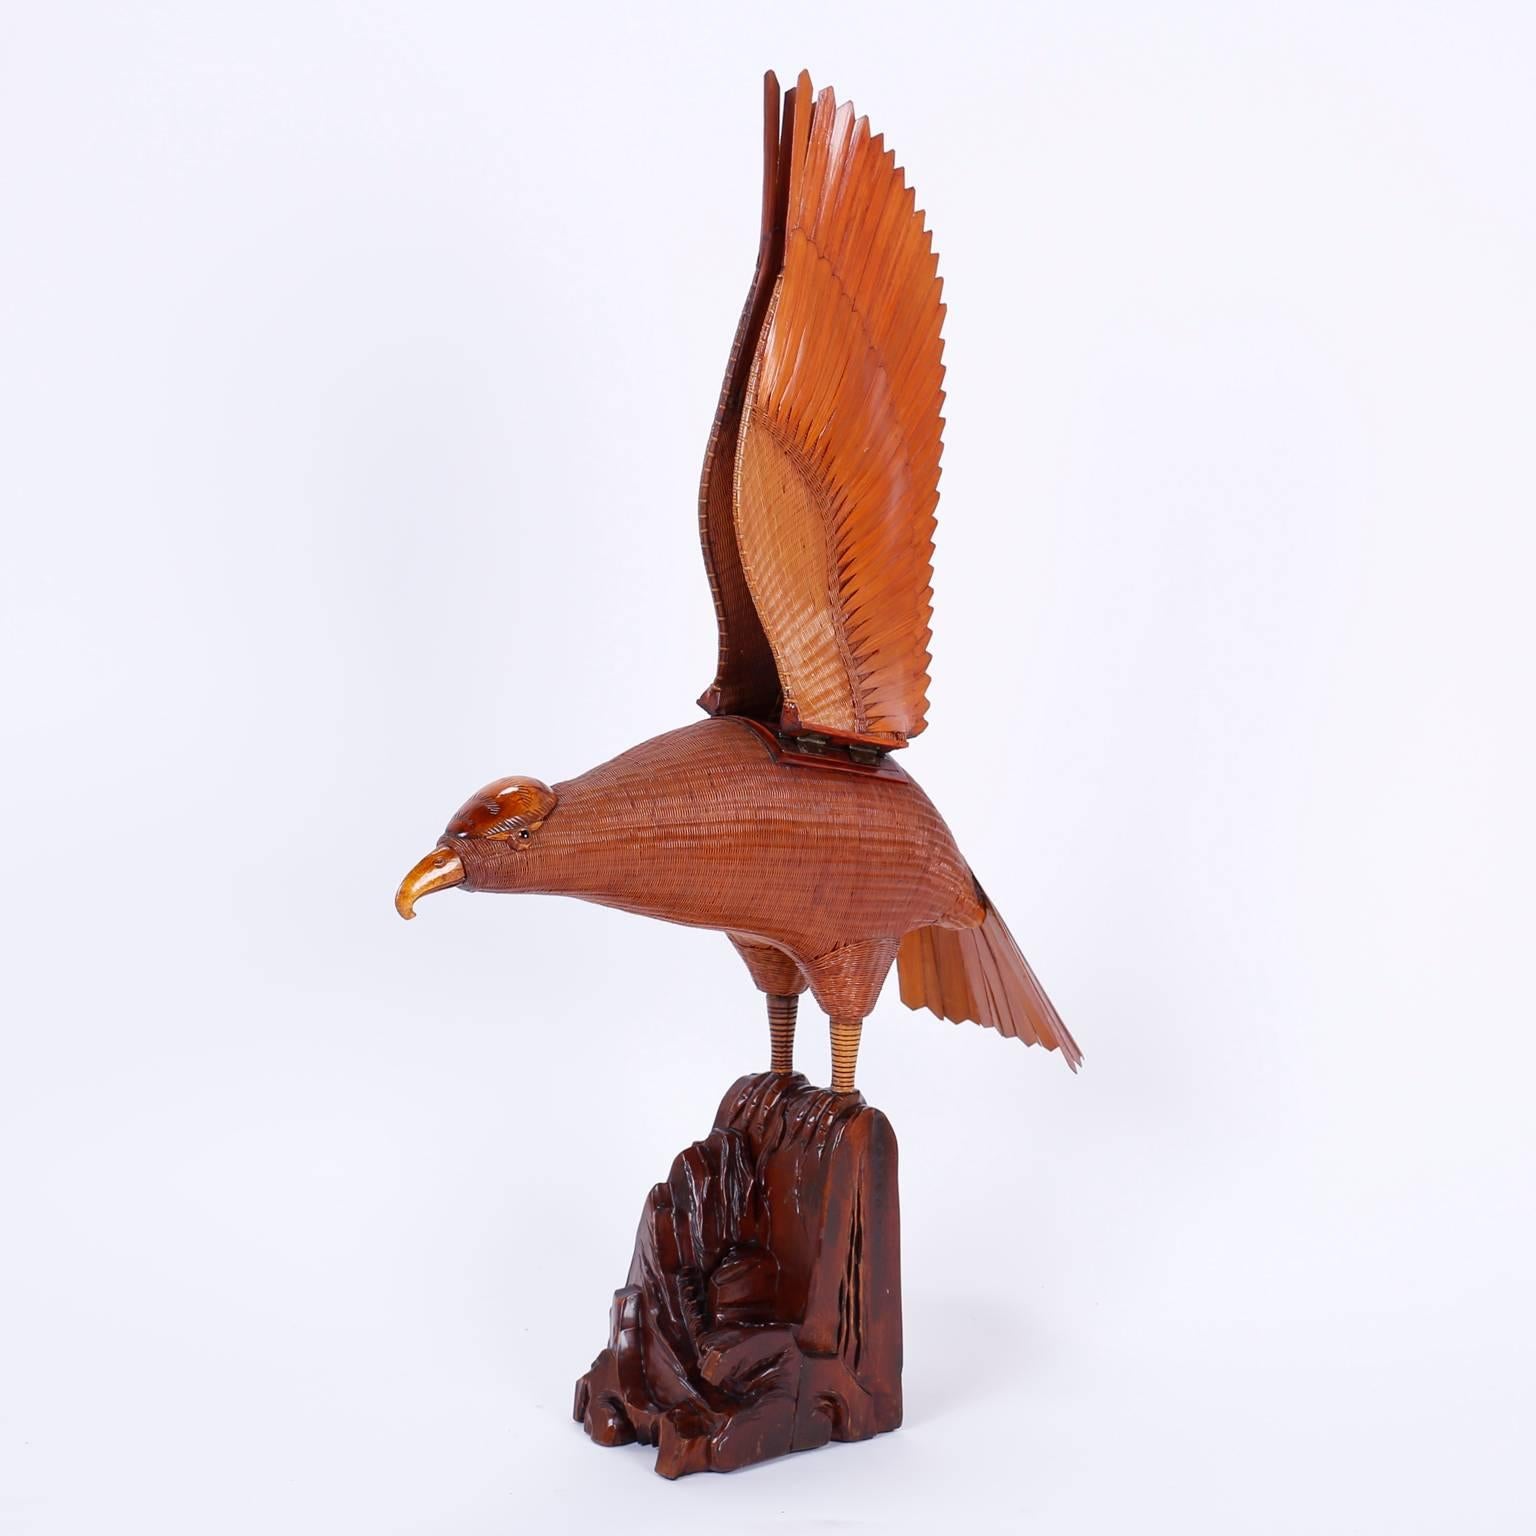 Oiseau ou faucon en osier de la célèbre collection shanghai, fabriqué de manière experte en osier et en rotin, avec des ailes en bois sculpté mobiles et amovibles, et perché sur un spécimen de racine organique. Le meilleur de la collection.